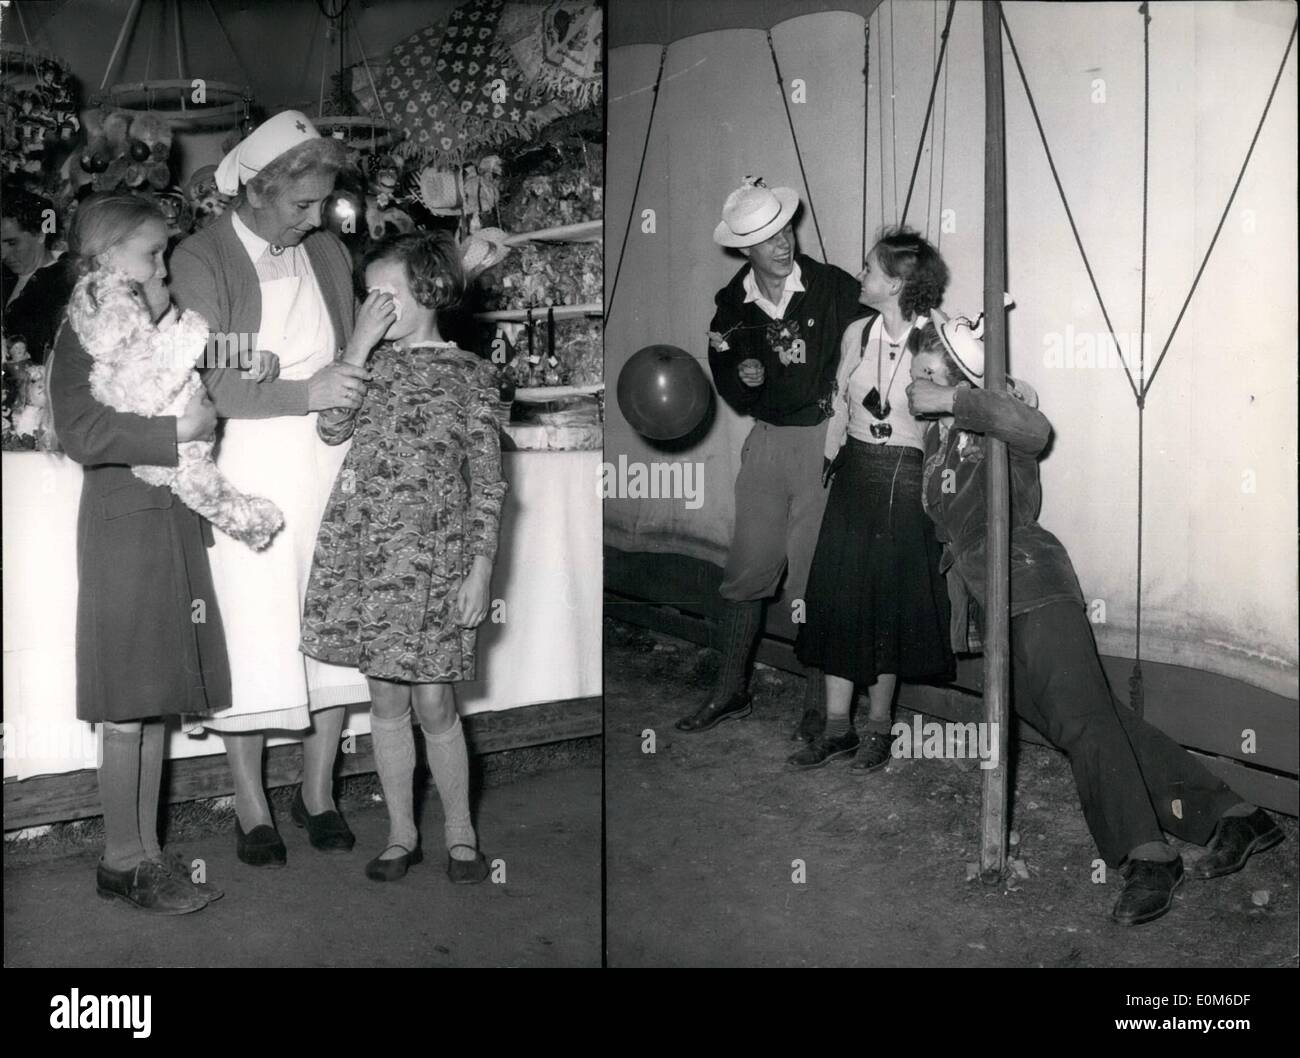 Ottobre 10, 1953 - Le gioie e le tristezze del Monaco di Baviera Oktoberfest: ombrelli, cappelli ,portafogli, inimmaginabile sono persi dai visitatori, talvolta e i bambini. Ma sono molto più facili da trovare come un portafoglio pieno. La croce si prende cura per questi ragazzi, drys le lacrime fino a mummia sceglie i. Immagine di destra mostra alcuni ''Wies'n-cadaveri''. Loewenbrau, Hofbrauhaus, Pschorbrau, il vino-nave perché essi fecero costruire in modo molto 'station?". Ora davvero tutto ciò che va su e giù, come su una nave e non anche il telegraffstaff vuole rimanere inpposition per un secondo. Foto Stock